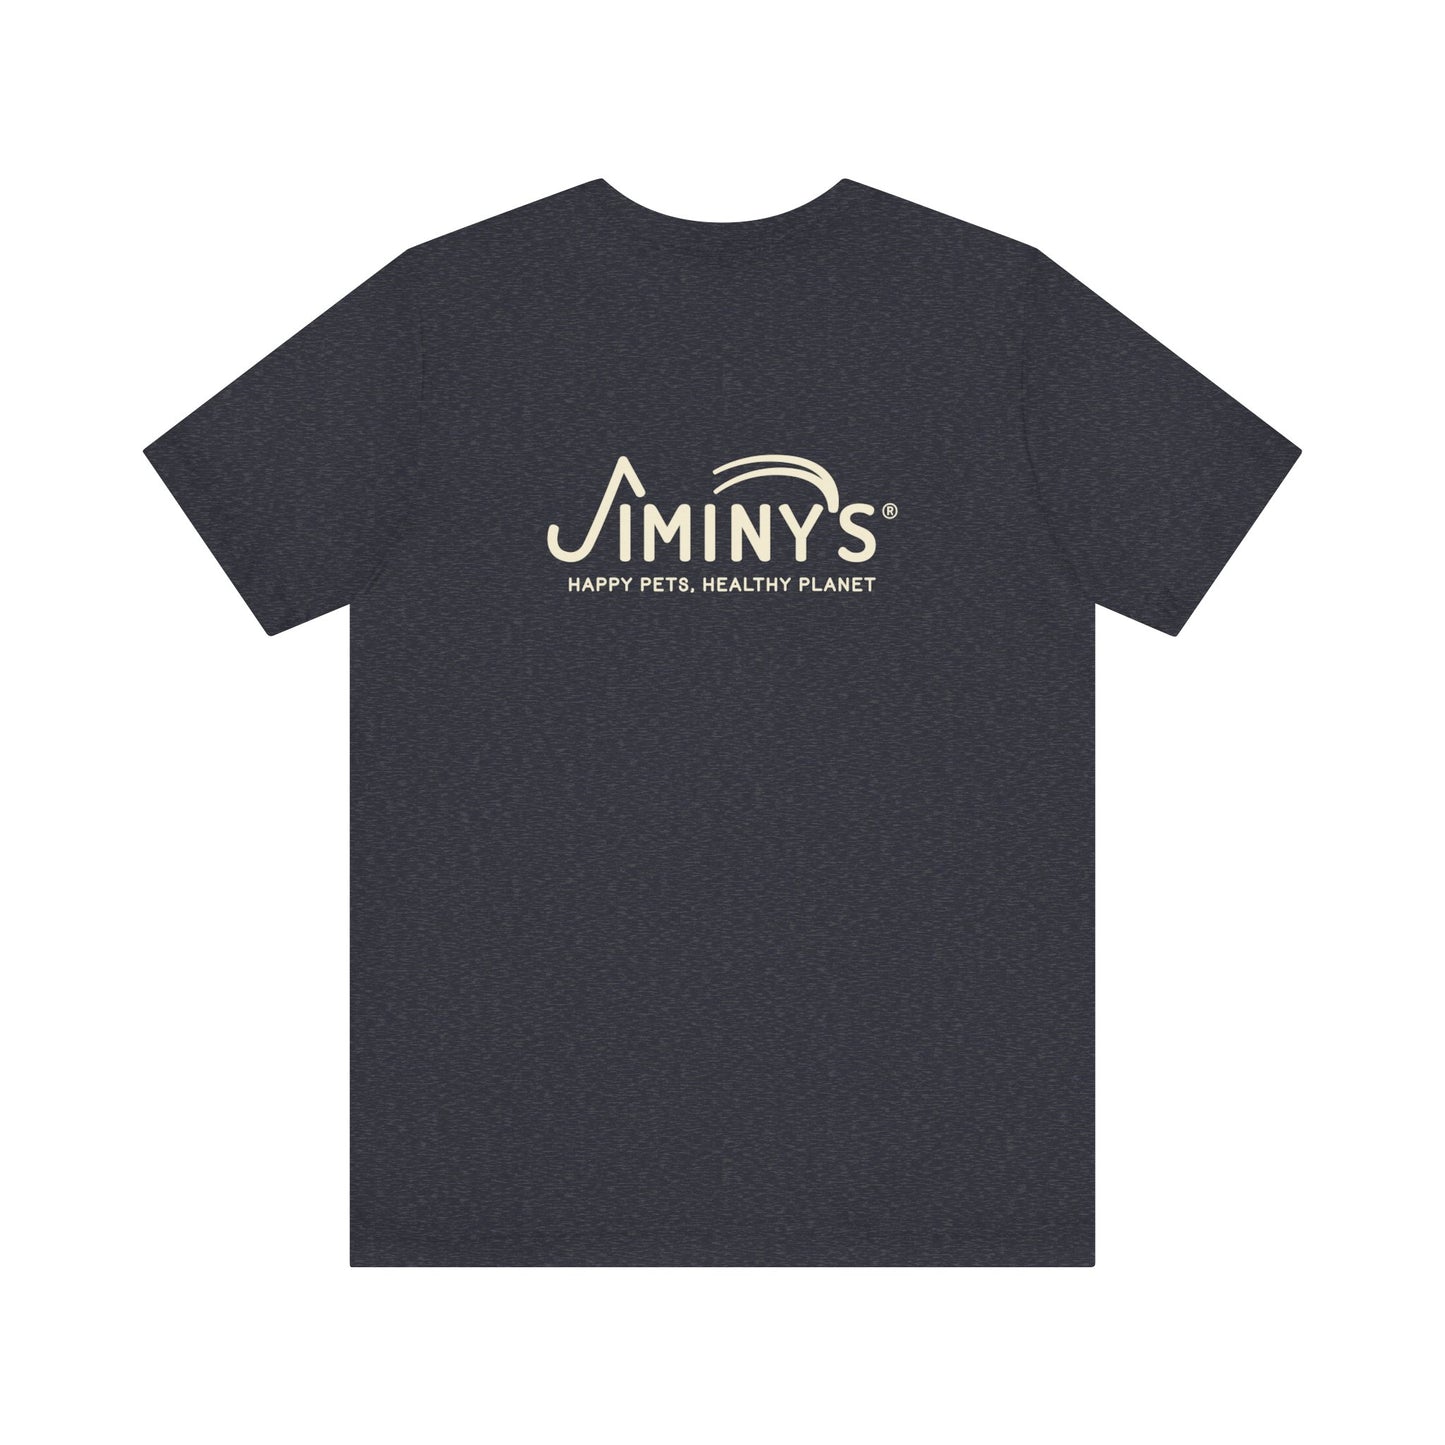 Cricket Shirt with Jiminy's Logo on Back